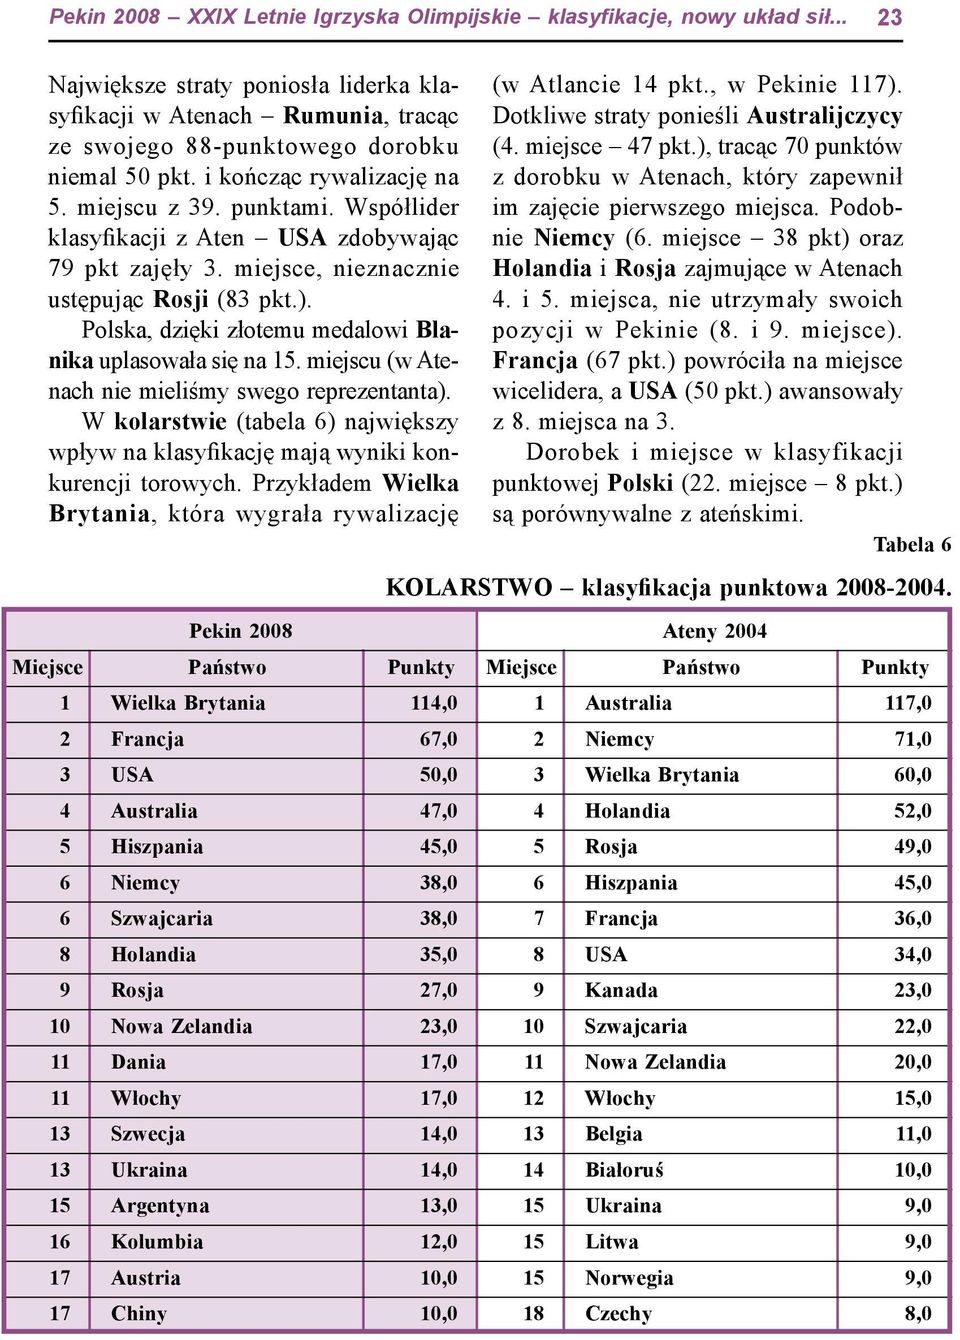 Polska, dzięki złotemu medalowi Blanika uplasowała się na 15. miejscu (w Atenach nie mieliśmy swego reprezentanta).